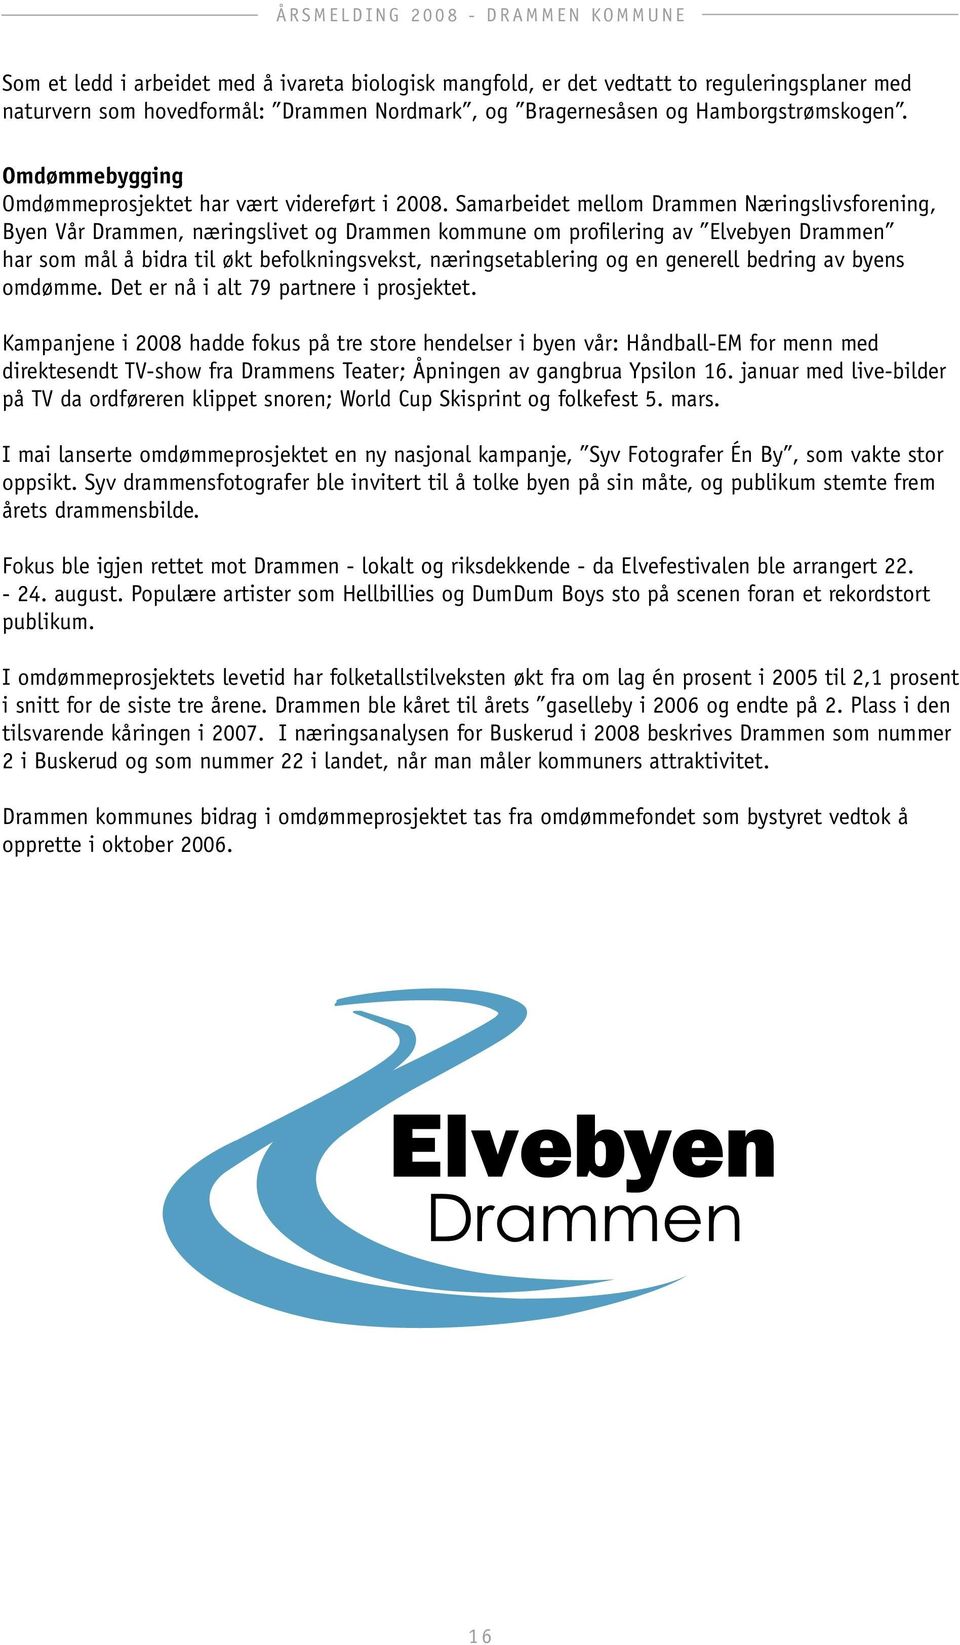 Samarbeidet mellom Drammen Næringslivsforening, Byen Vår Drammen, næringslivet og Drammen kommune om profilering av Elvebyen Drammen har som mål å bidra til økt befolkningsvekst, næringsetablering og